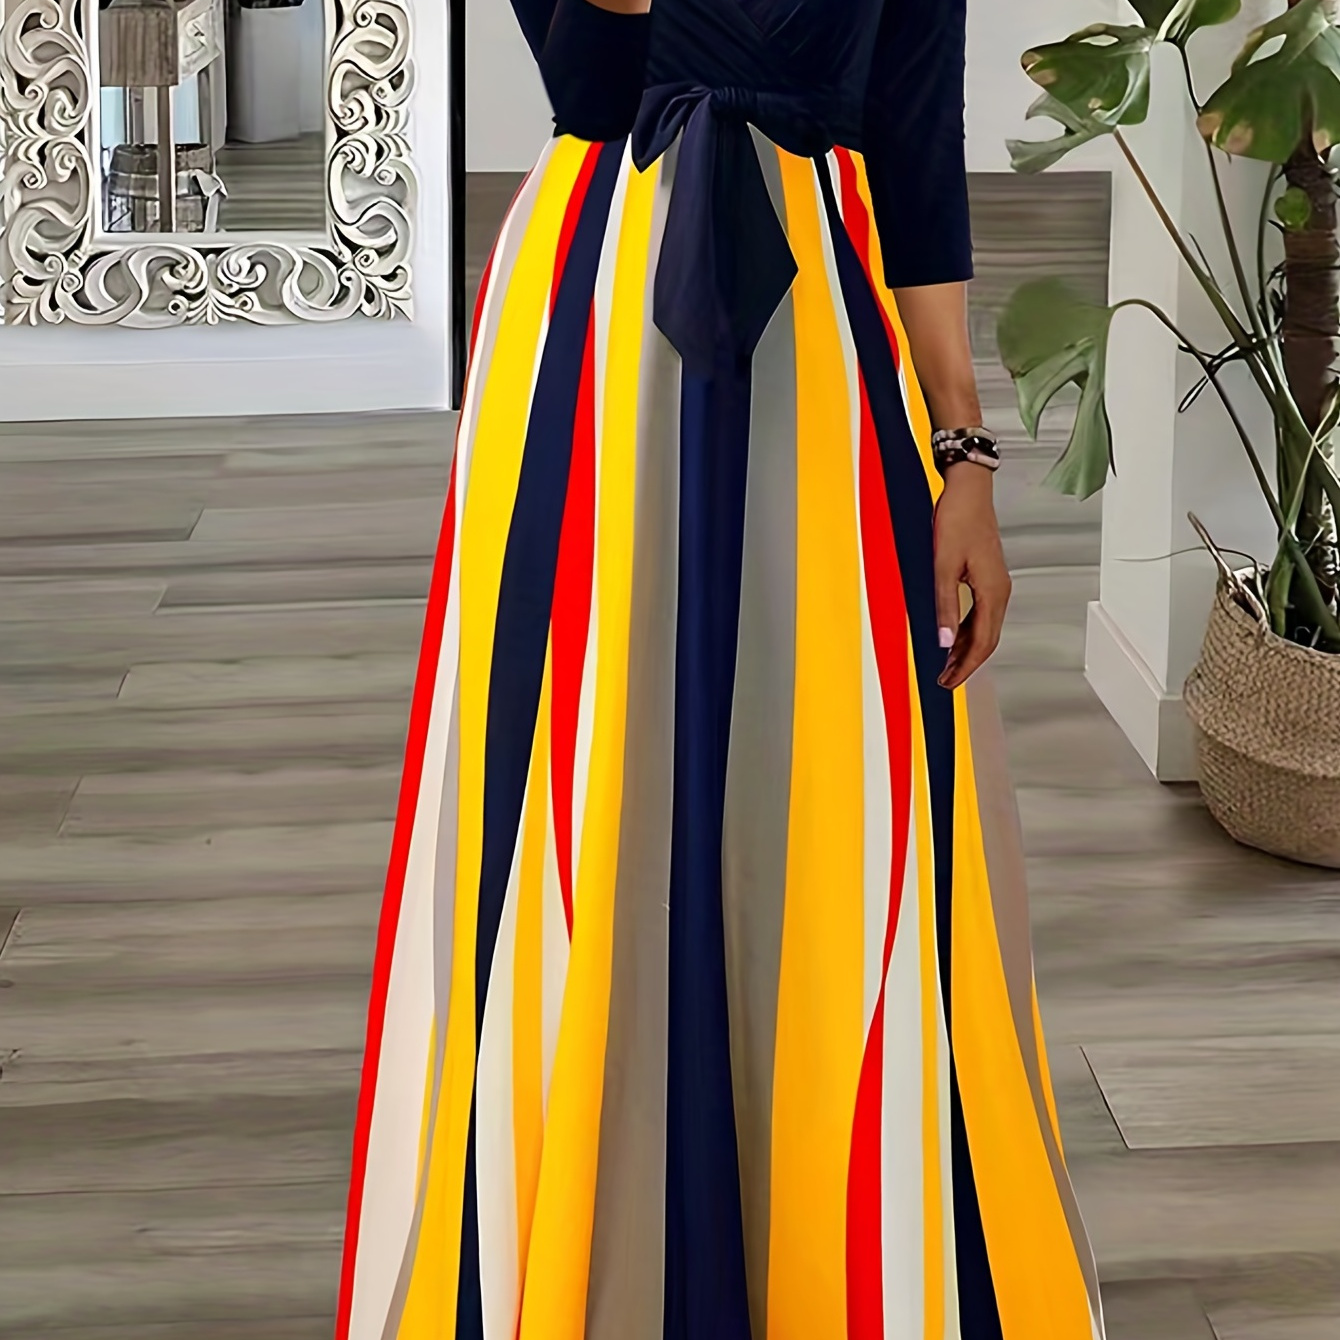 

Plus Size Elegant Dress, Women's Plus Colorblock Colorful Striped Short Sleeve Surplice Neck Tie Front Maxi Dress